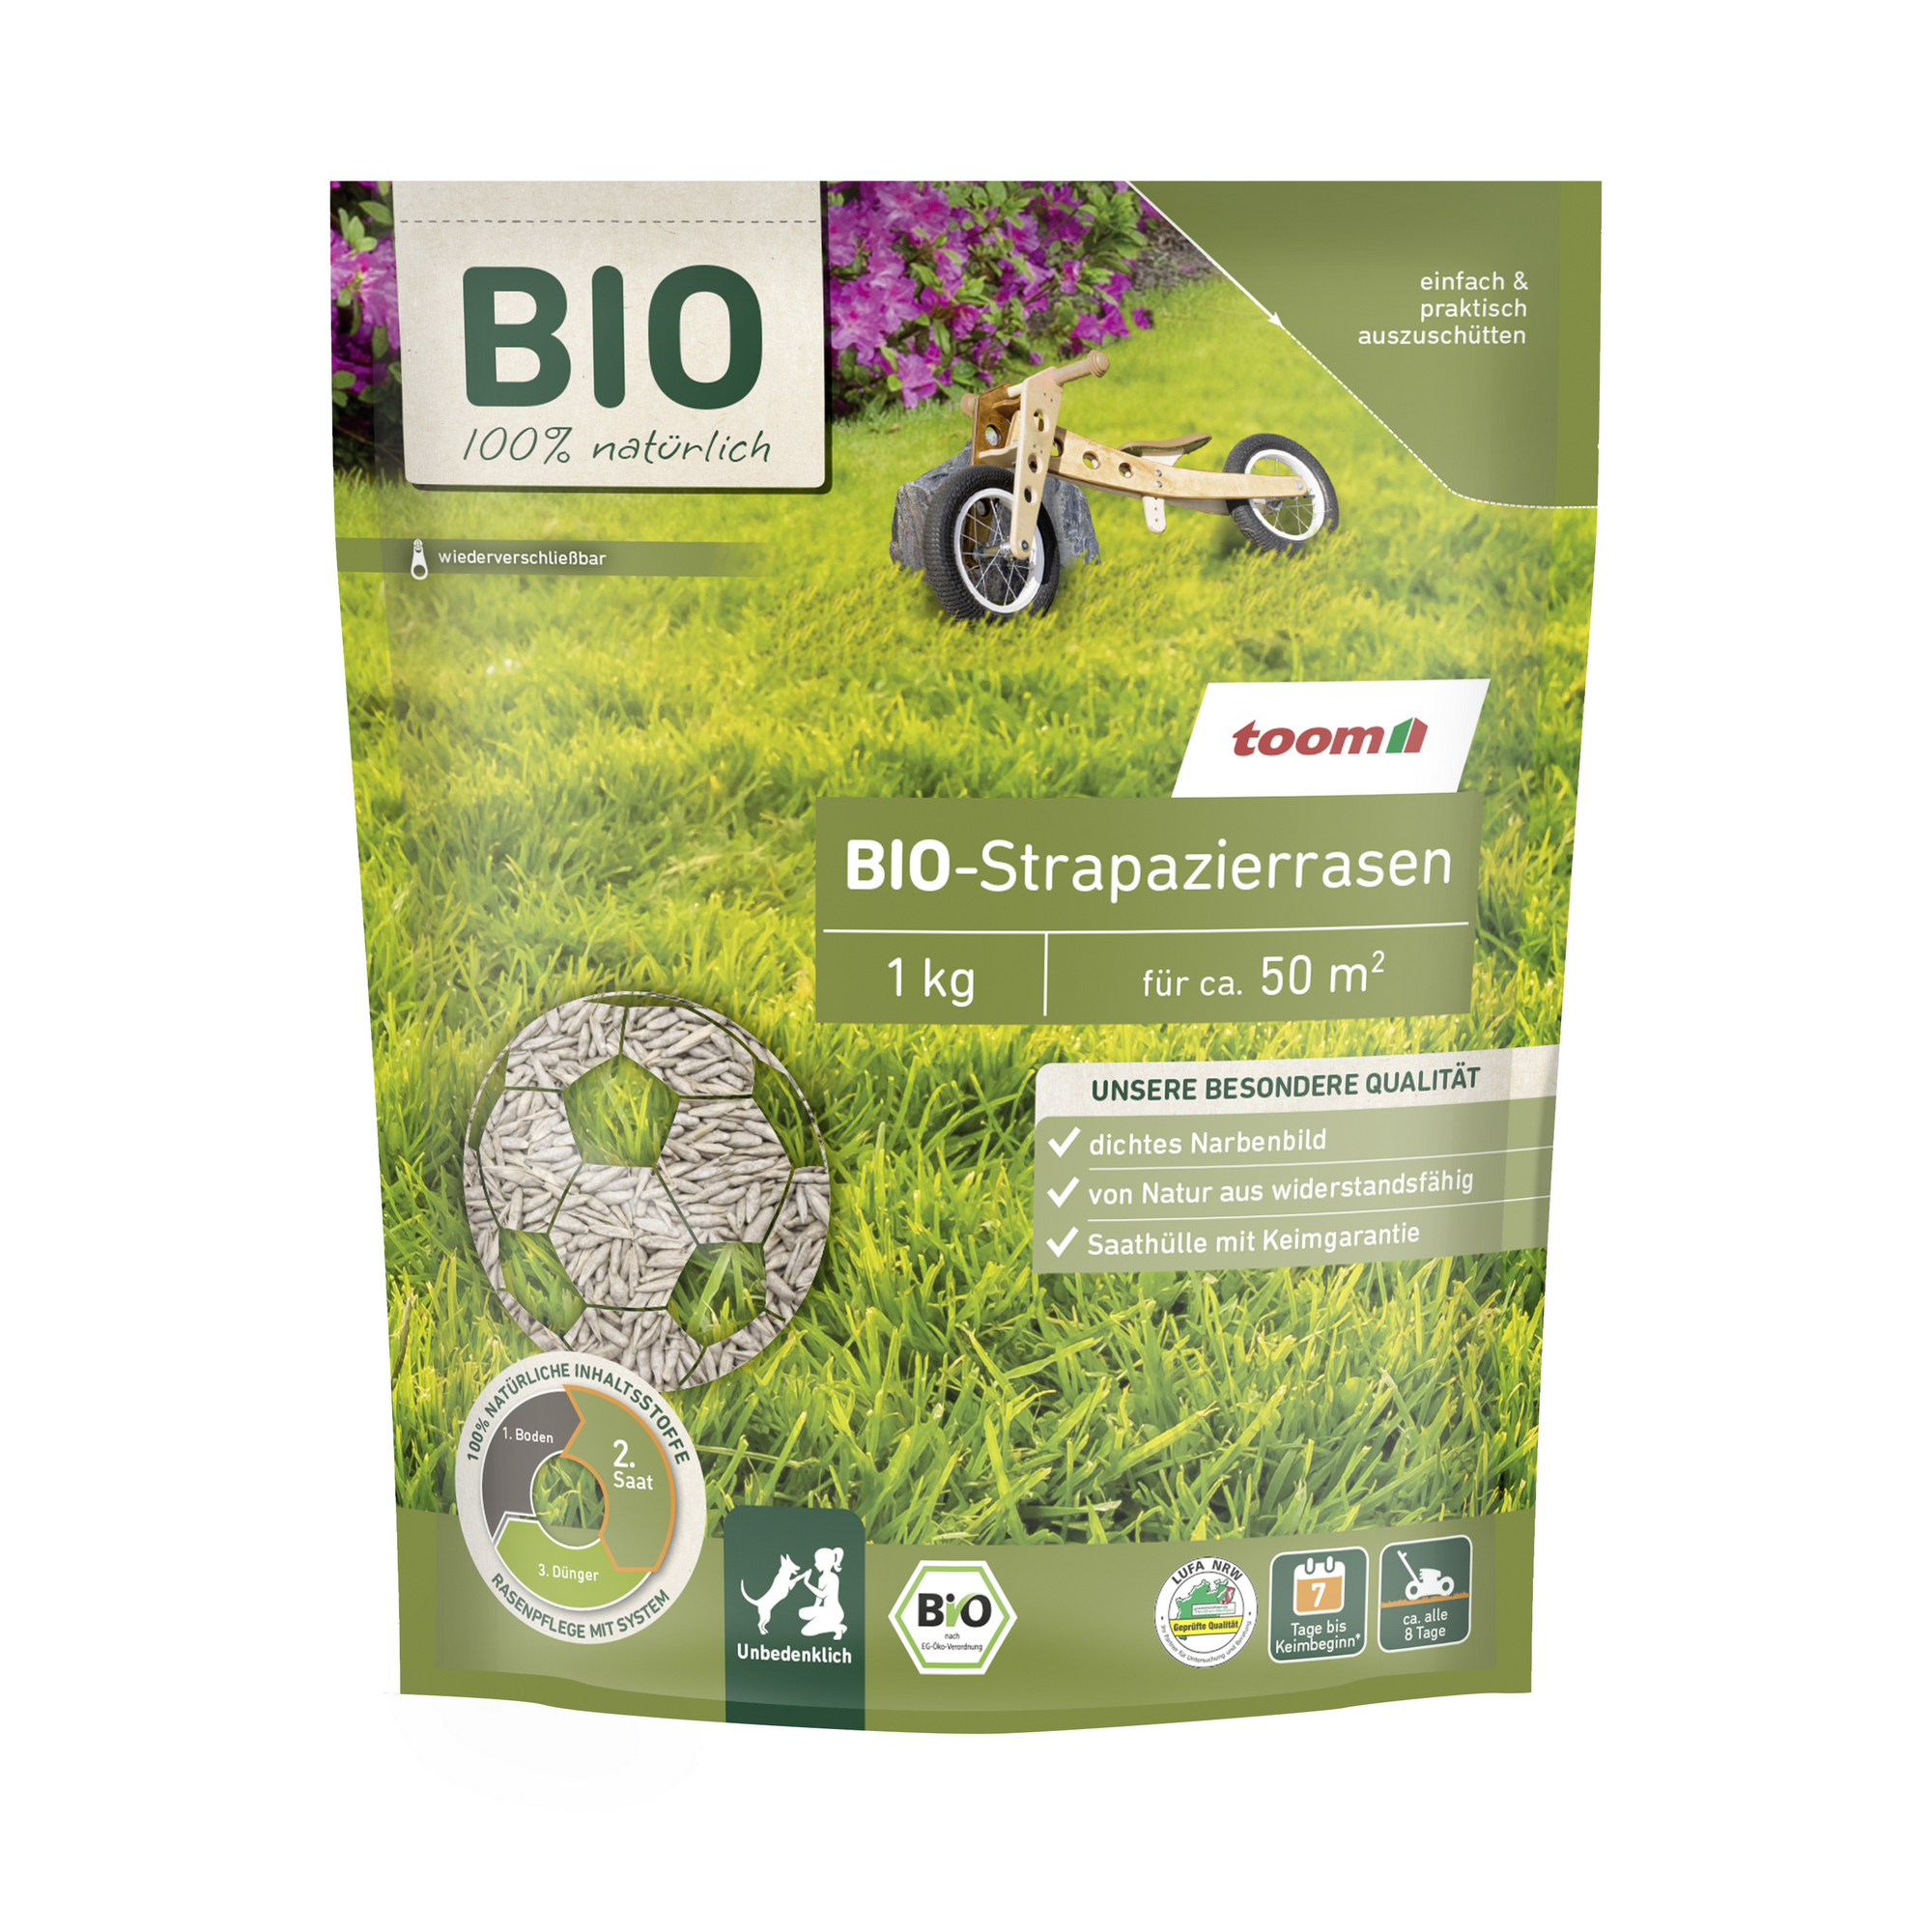 Bio-Strapazierrasen für 50 m² + product picture